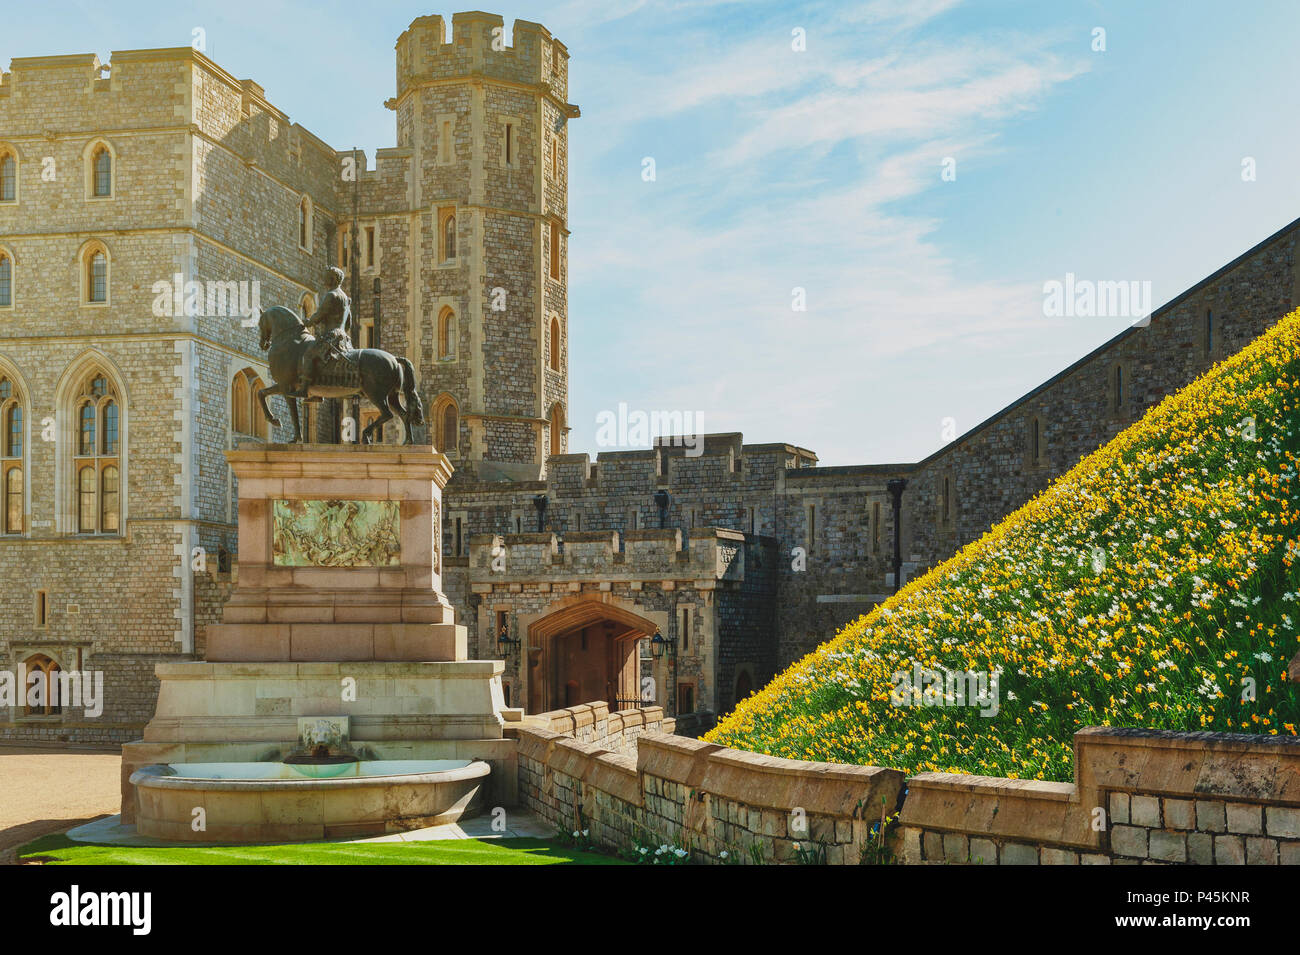 Il re Carlo II Statua in alto Ward e il quadrangolo del Castello di Windsor, la residenza reale di Windsor nella contea del Berkshire, Inghilterra, Regno Unito Foto Stock